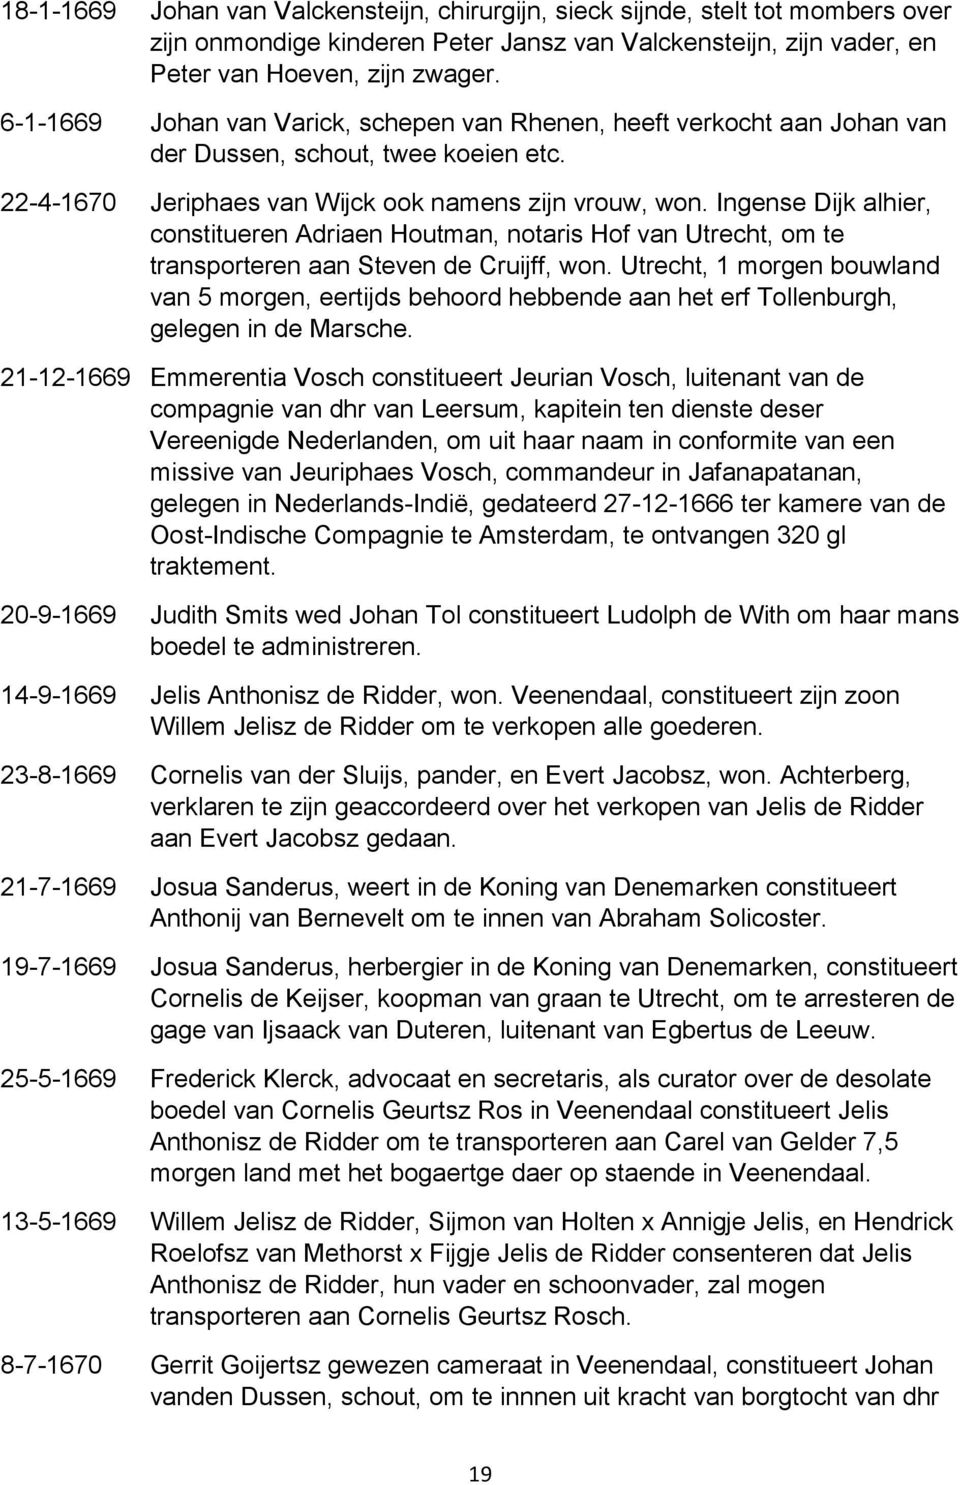 Ingense Dijk alhier, constitueren Adriaen Houtman, notaris Hof van Utrecht, om te transporteren aan Steven de Cruijff, won.